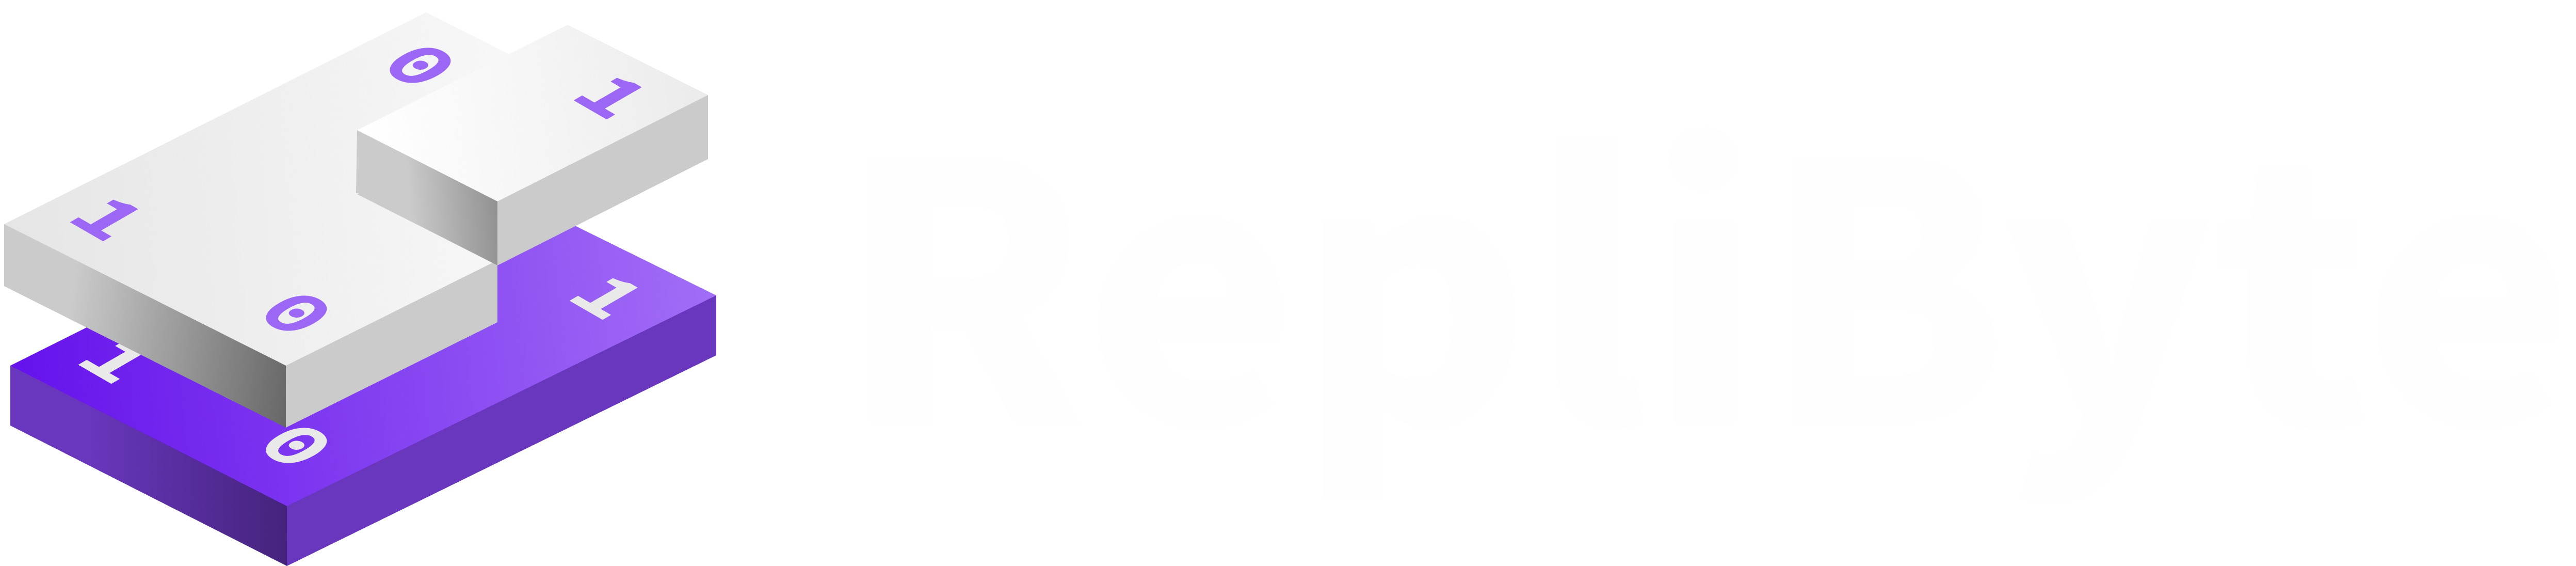 RepliByte Logo.png